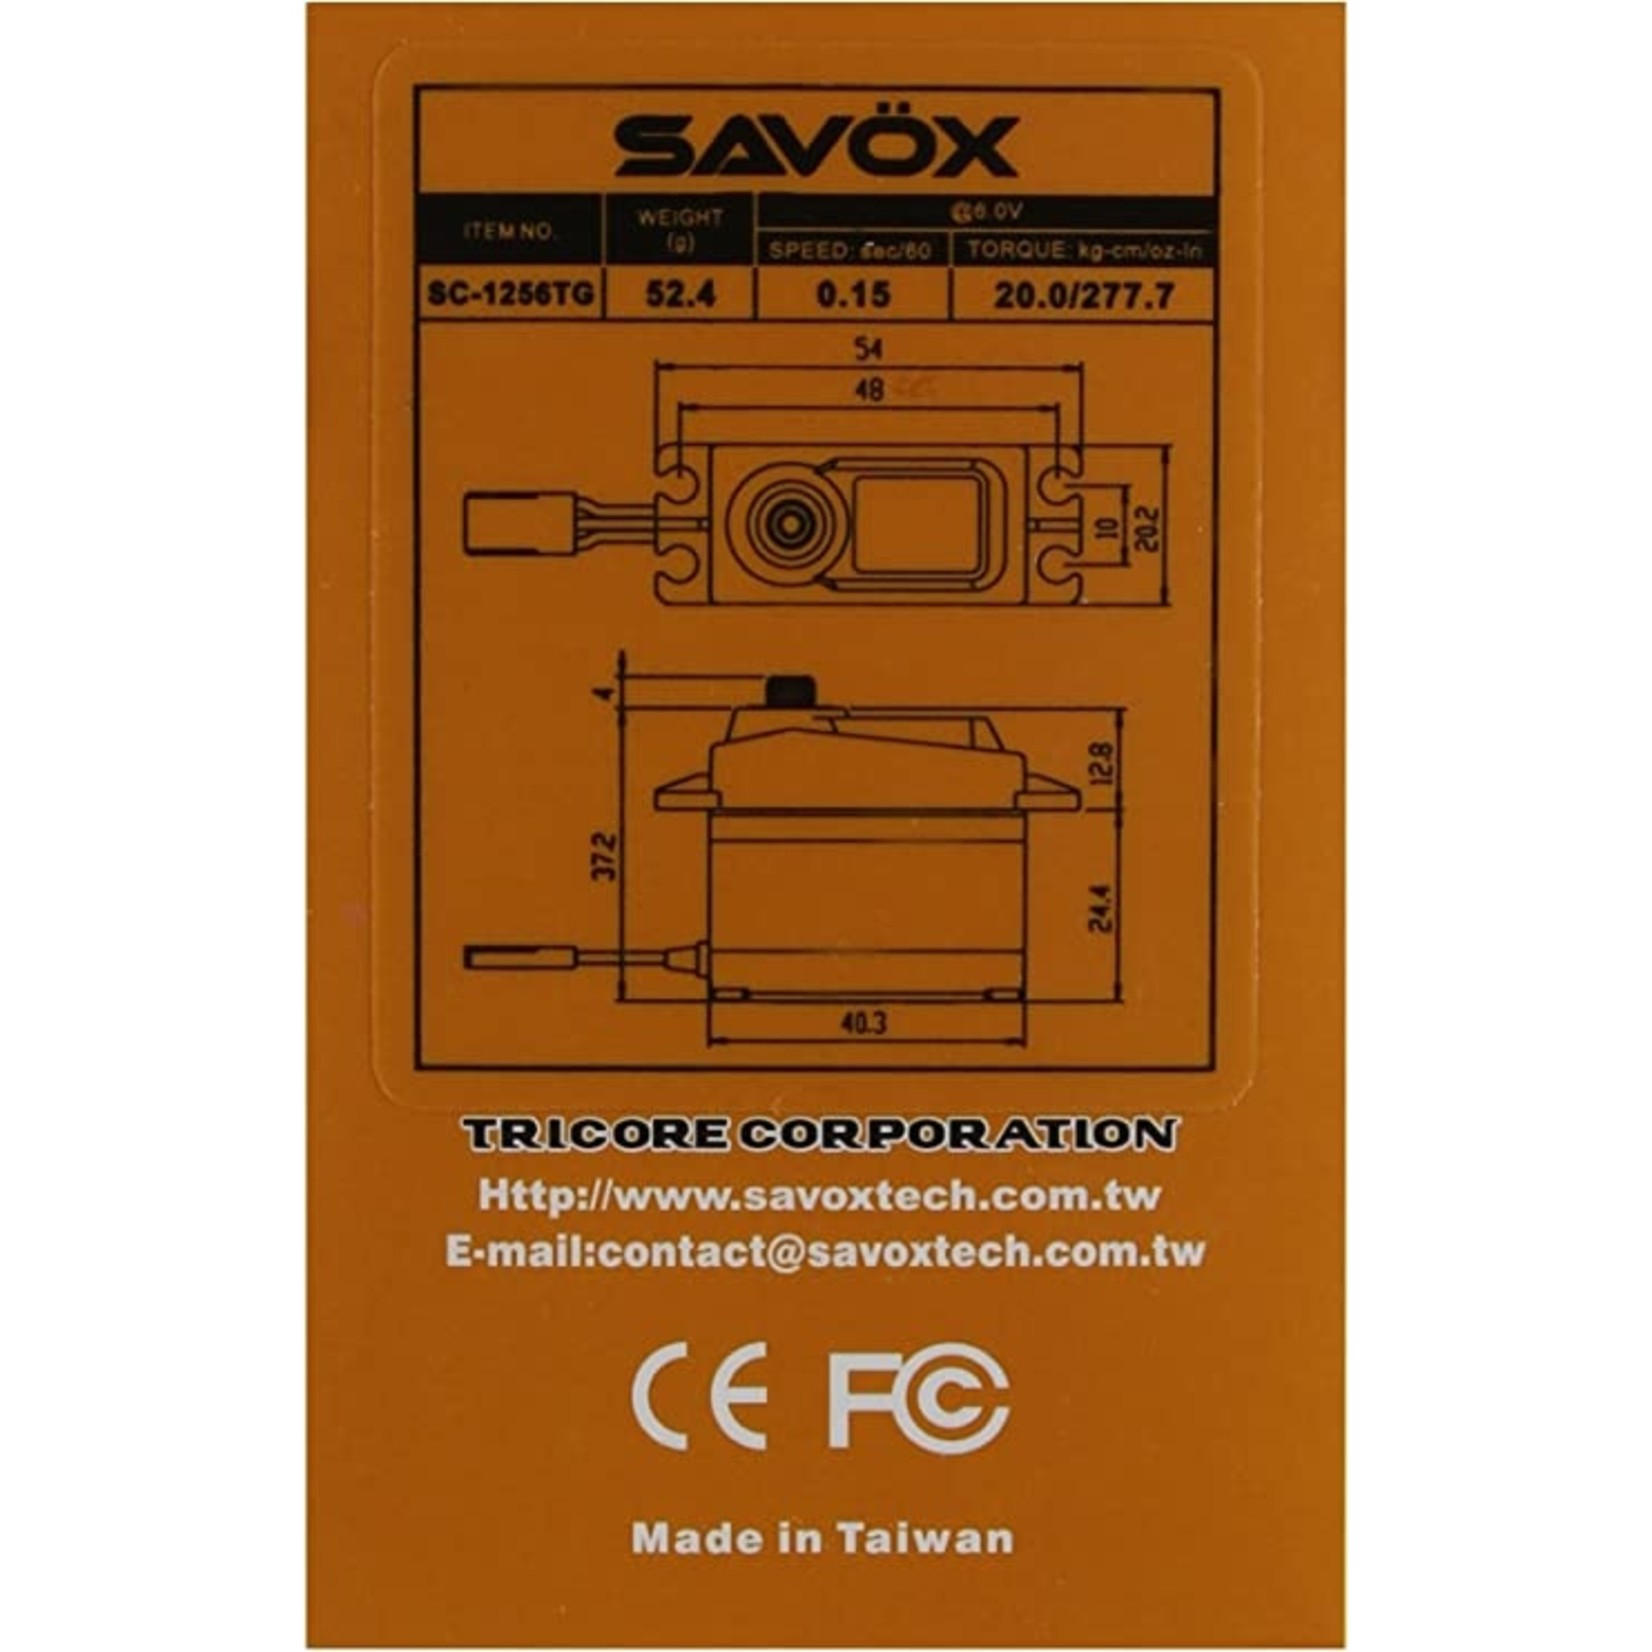 Savox Savox Standard Digital "High Speed" Titanium Gear Servo #SC-1258TG